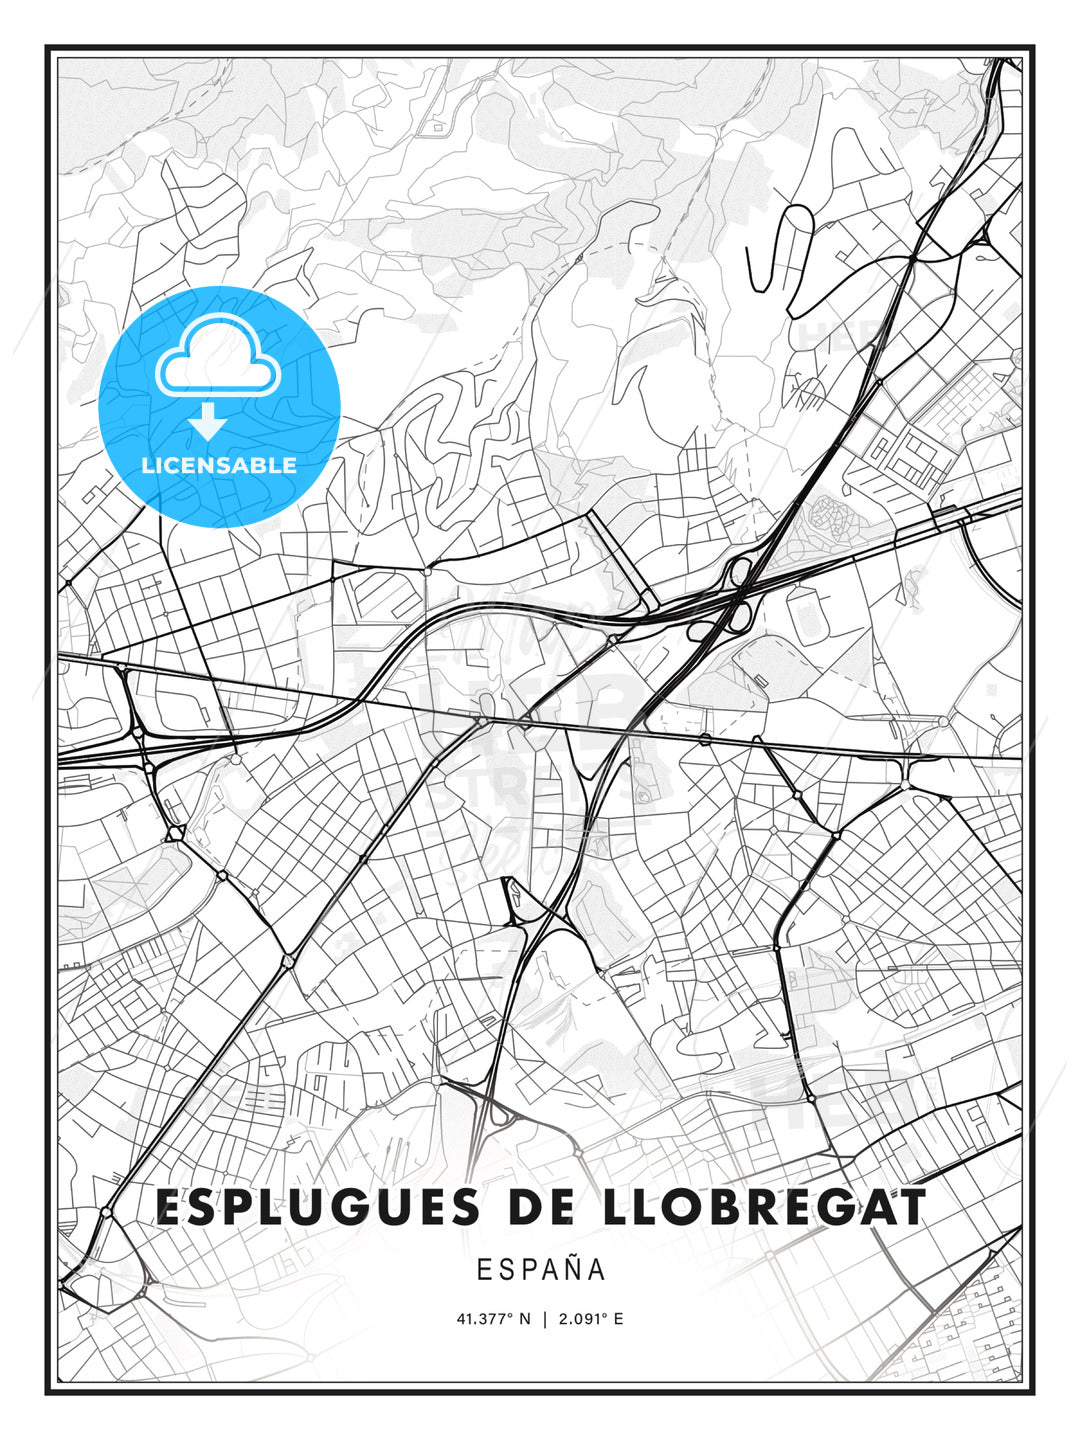 Esplugues de Llobregat, Spain, Modern Print Template in Various Formats - HEBSTREITS Sketches